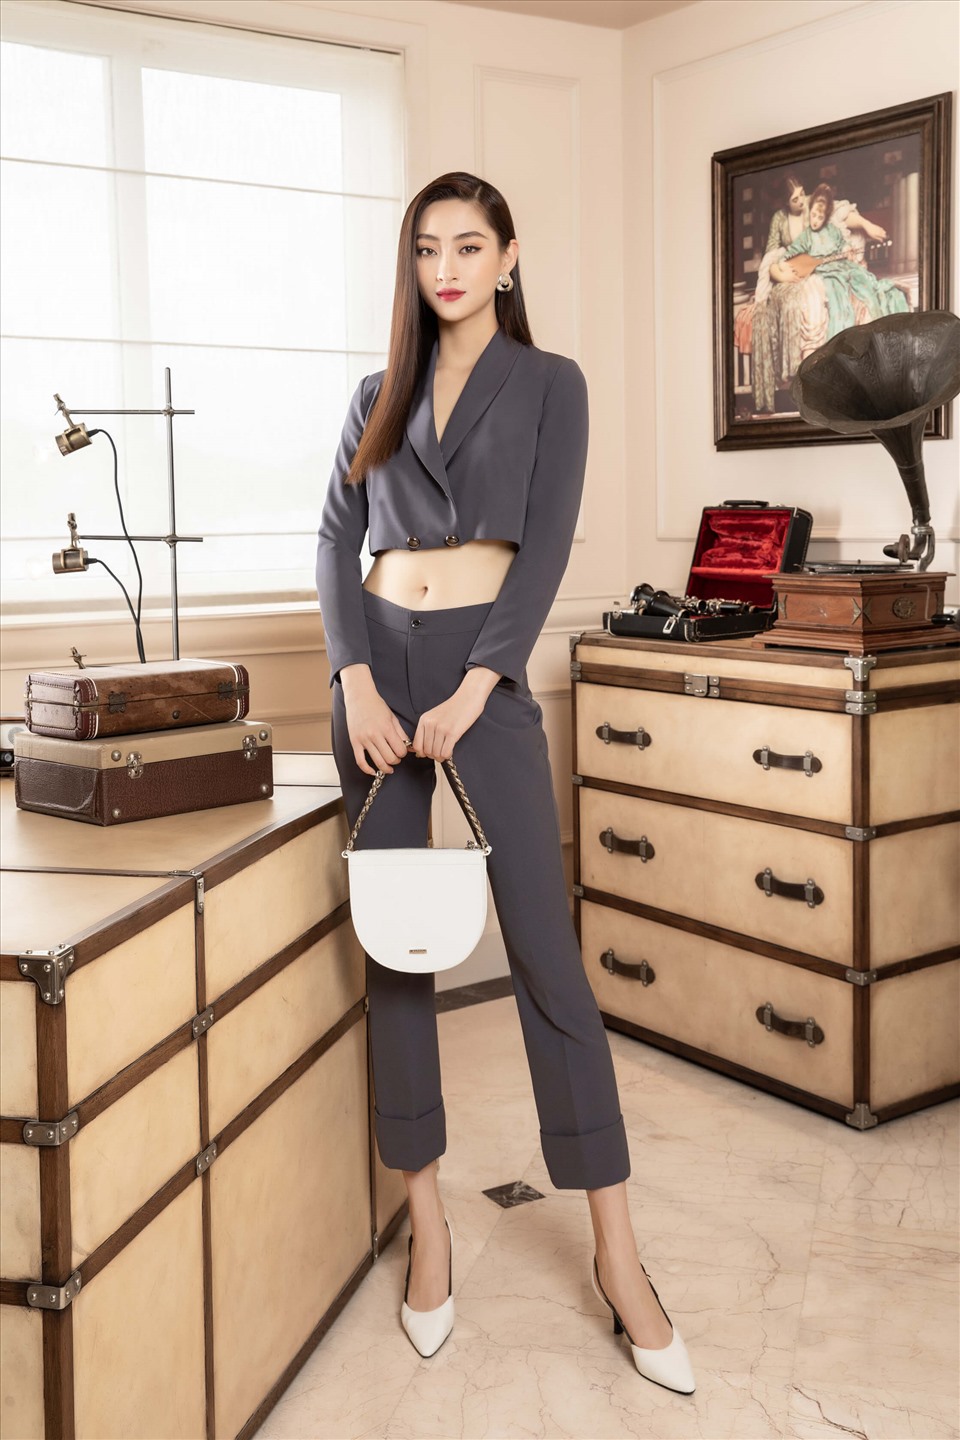 Là một tín đồ thời trang, Hoa hậu Lương Thuỳ Linh cũng có gần 2 năm tiếp xúc và làm việc cùng những nhà thiết kế, stylist nổi tiếng và nhiều thương hiệu hàng đầu quốc tế. Ảnh: Tân Lê.